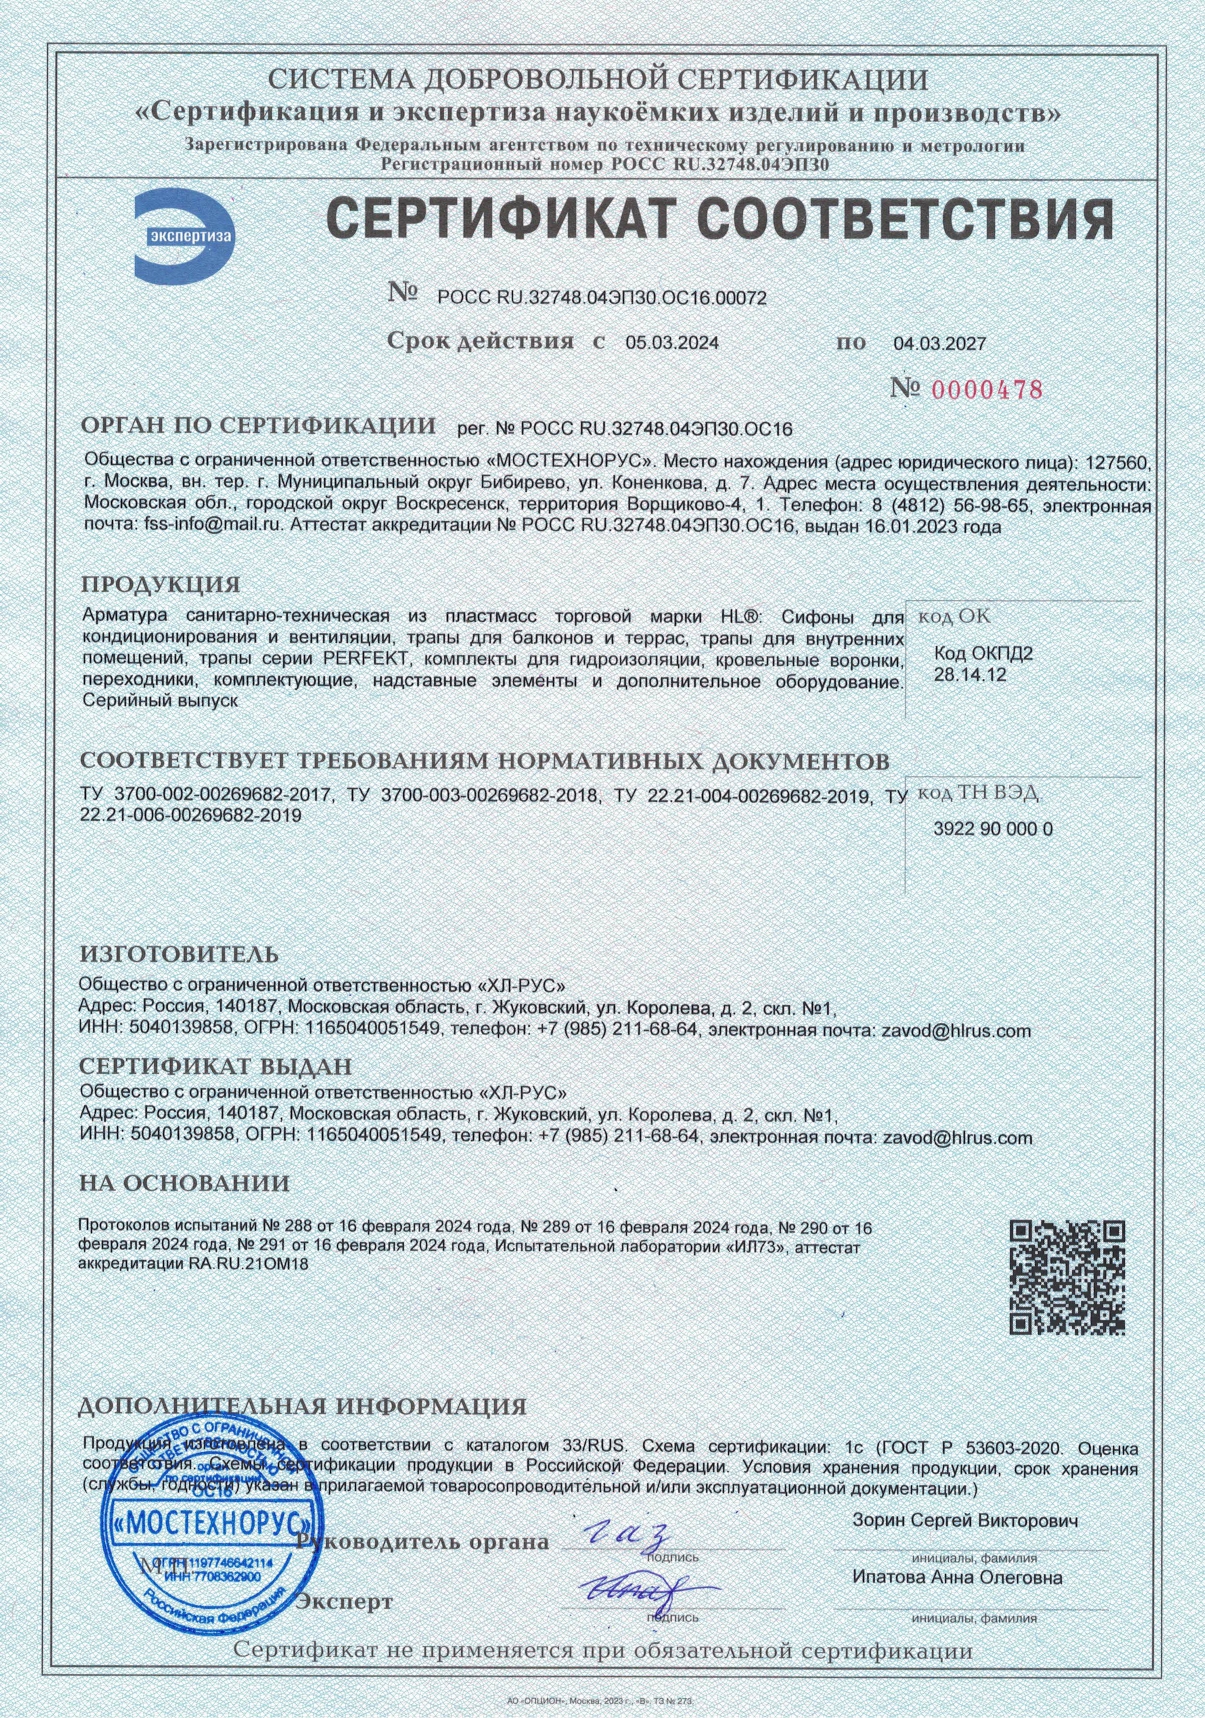 Сертификат соответствия на продукцию HL, каталог 33/RUS